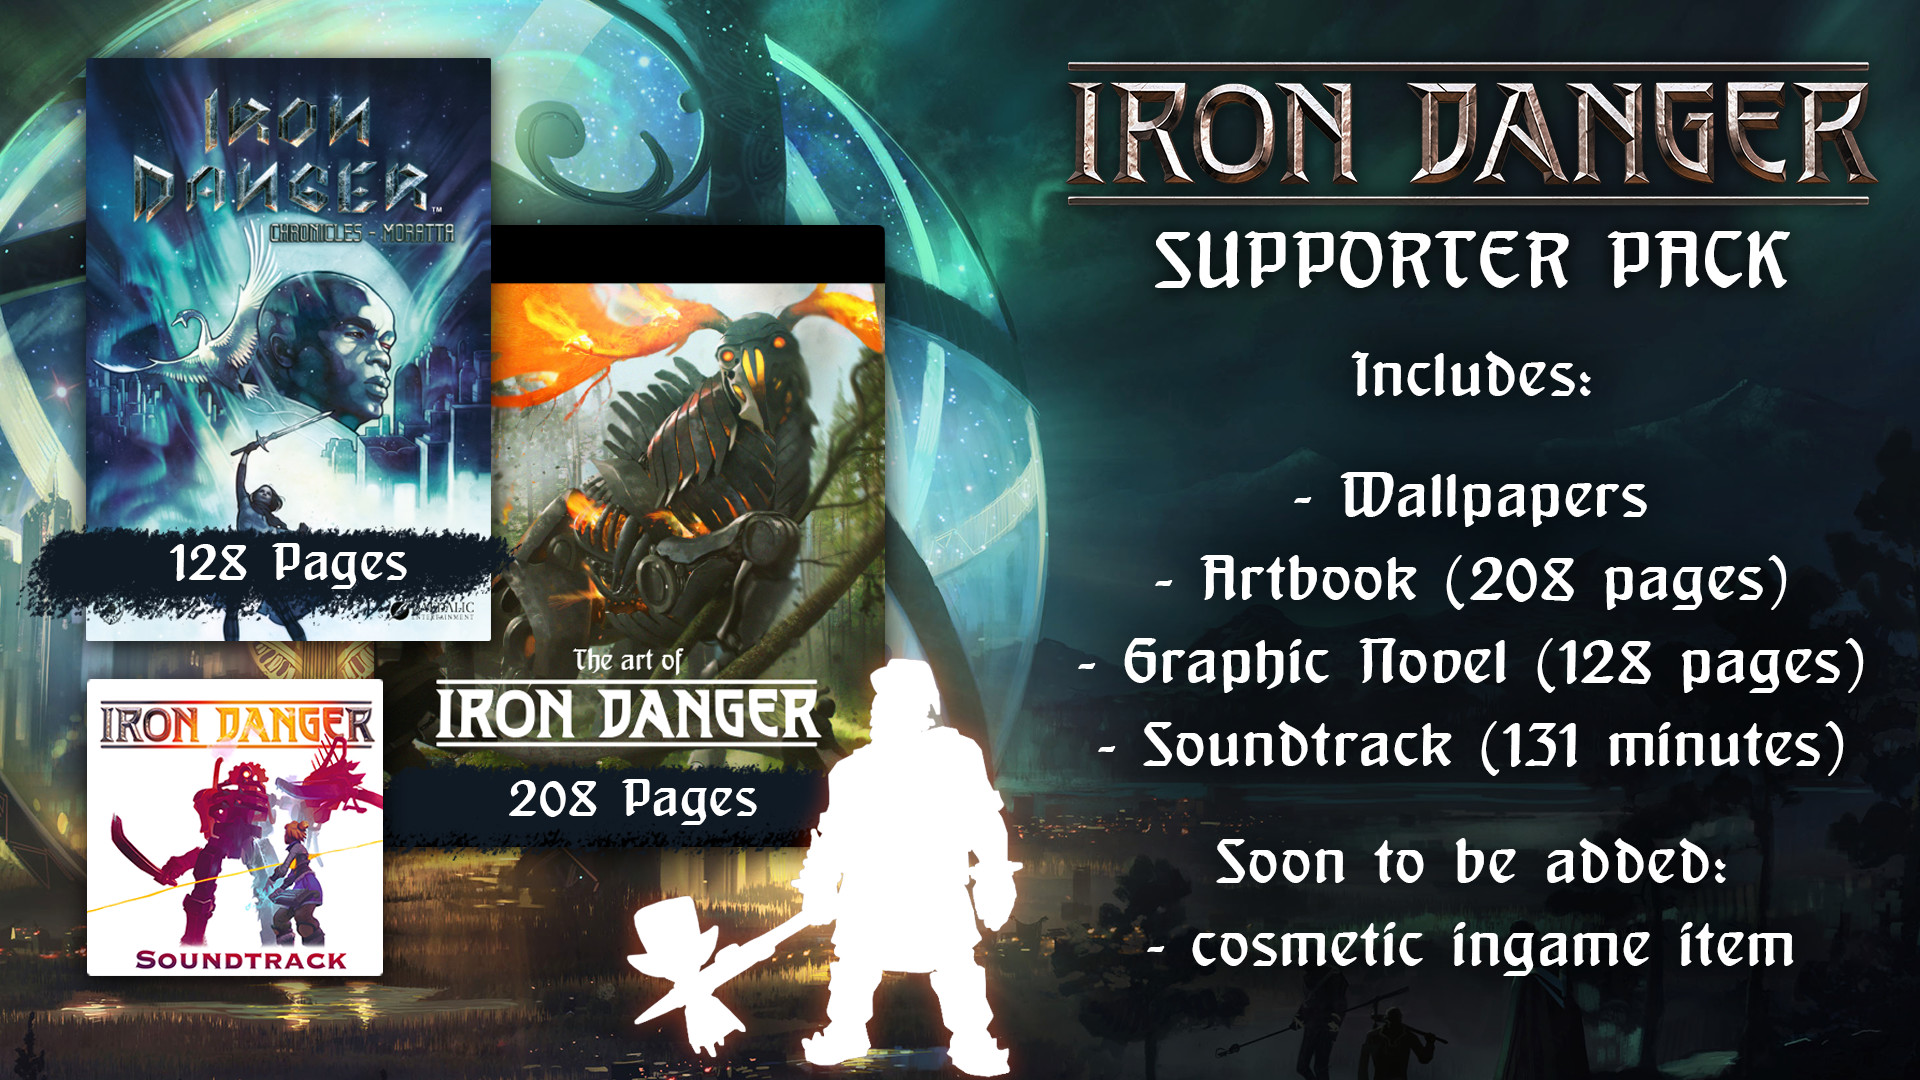 Iron Danger - Supporter Pack DLC Steam CD Key 4.51$